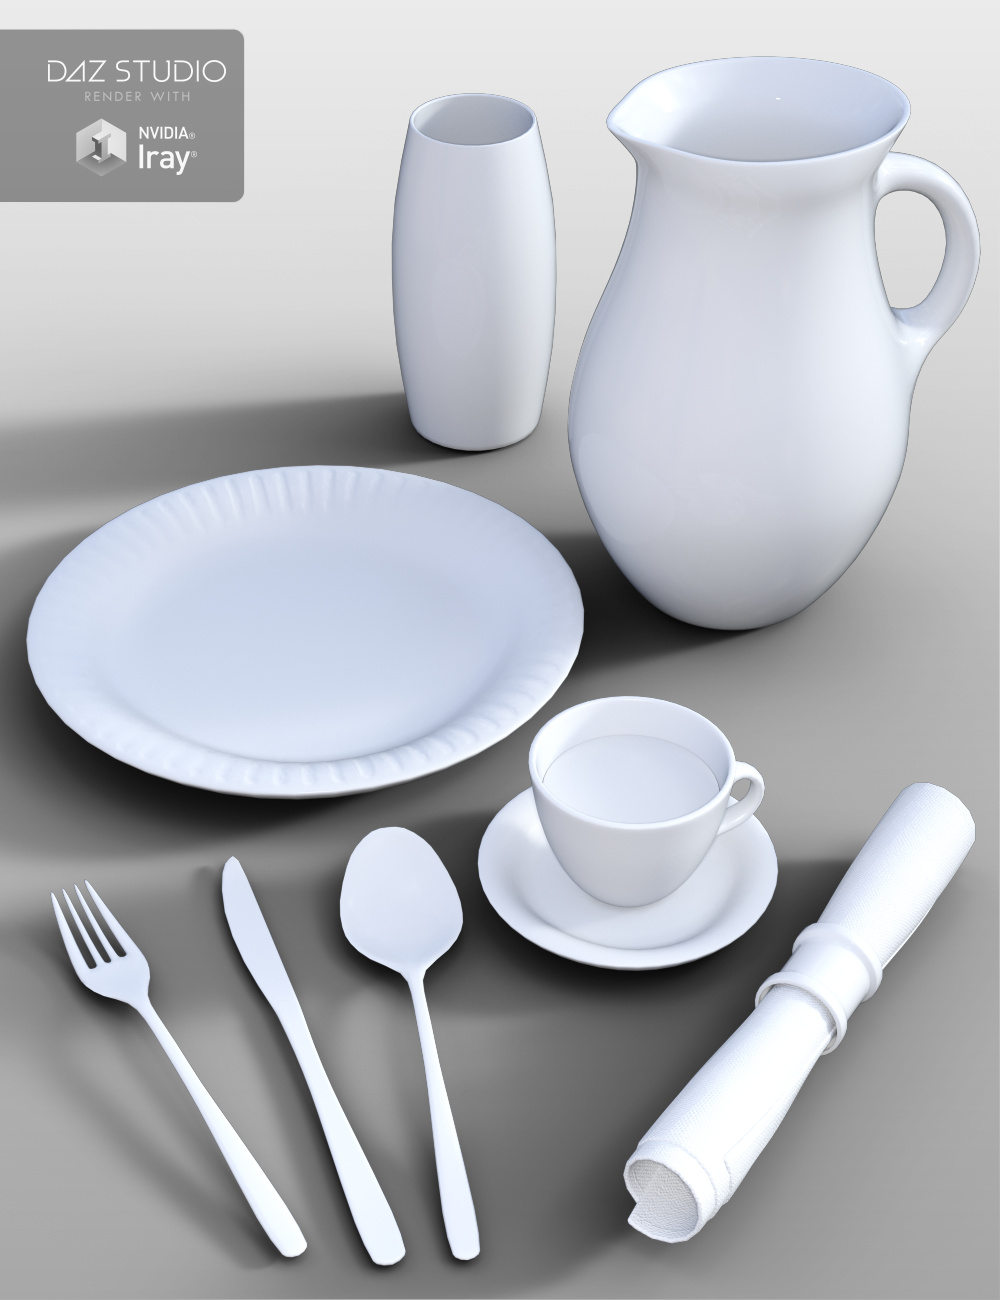 Patio Dining by: Merlin Studios, 3D Models by Daz 3D